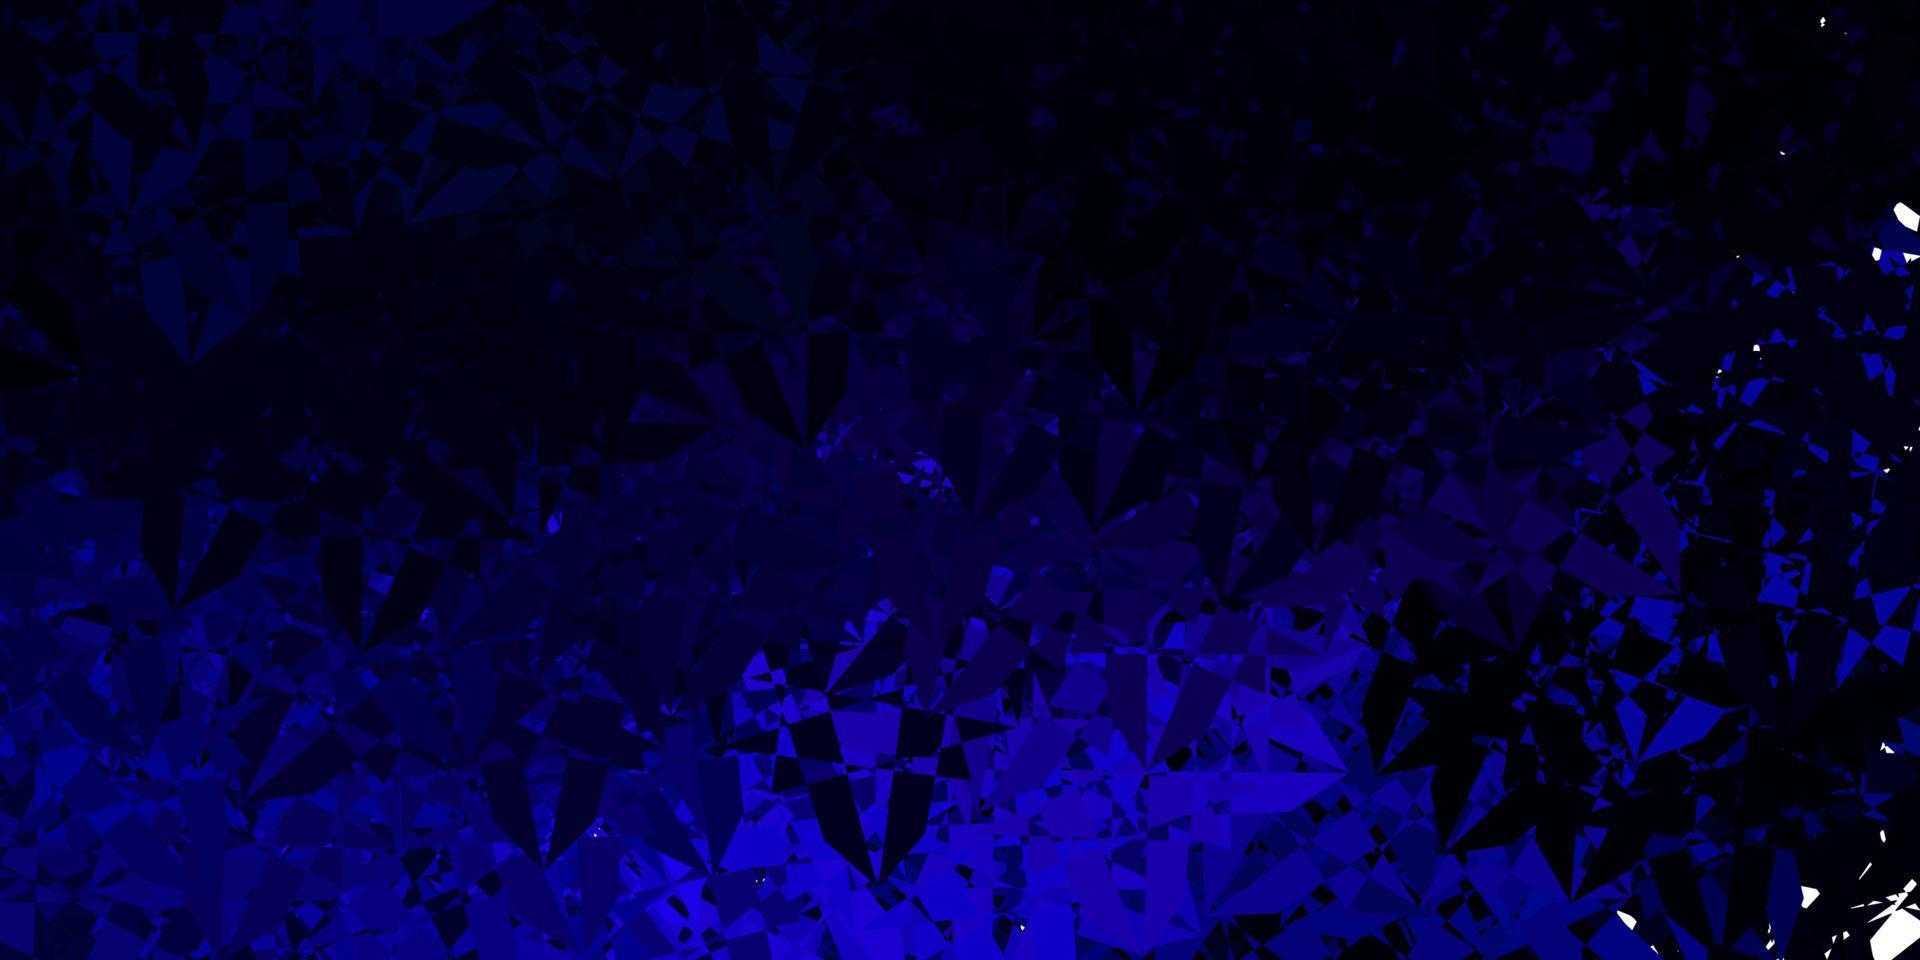 mörkrosa, blå vektorbakgrund med polygonala former. vektor